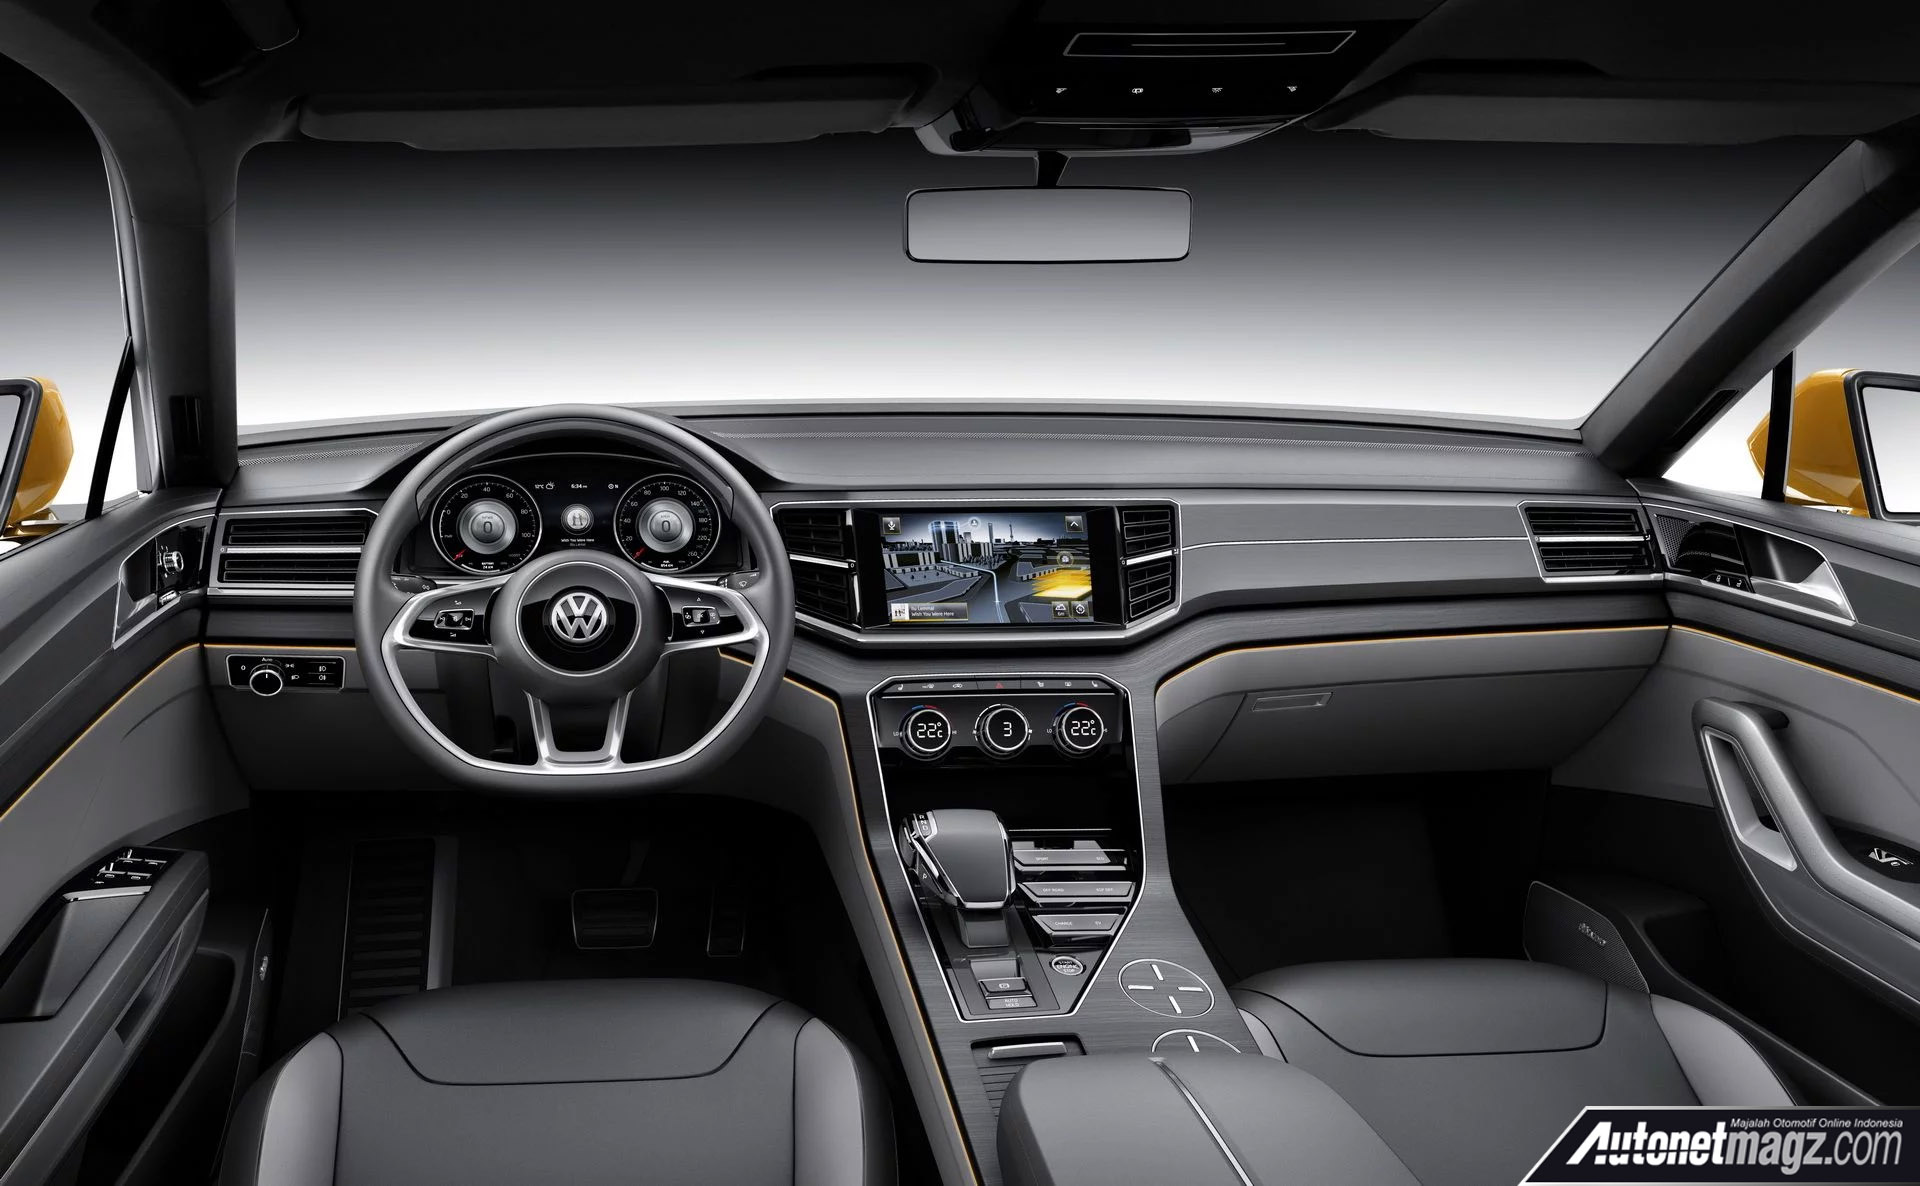 Berita, Volkswagen CrossBlue Concept 2013 interior: Volkswagen Tiguan Coupe Hadir Tahun Depan!